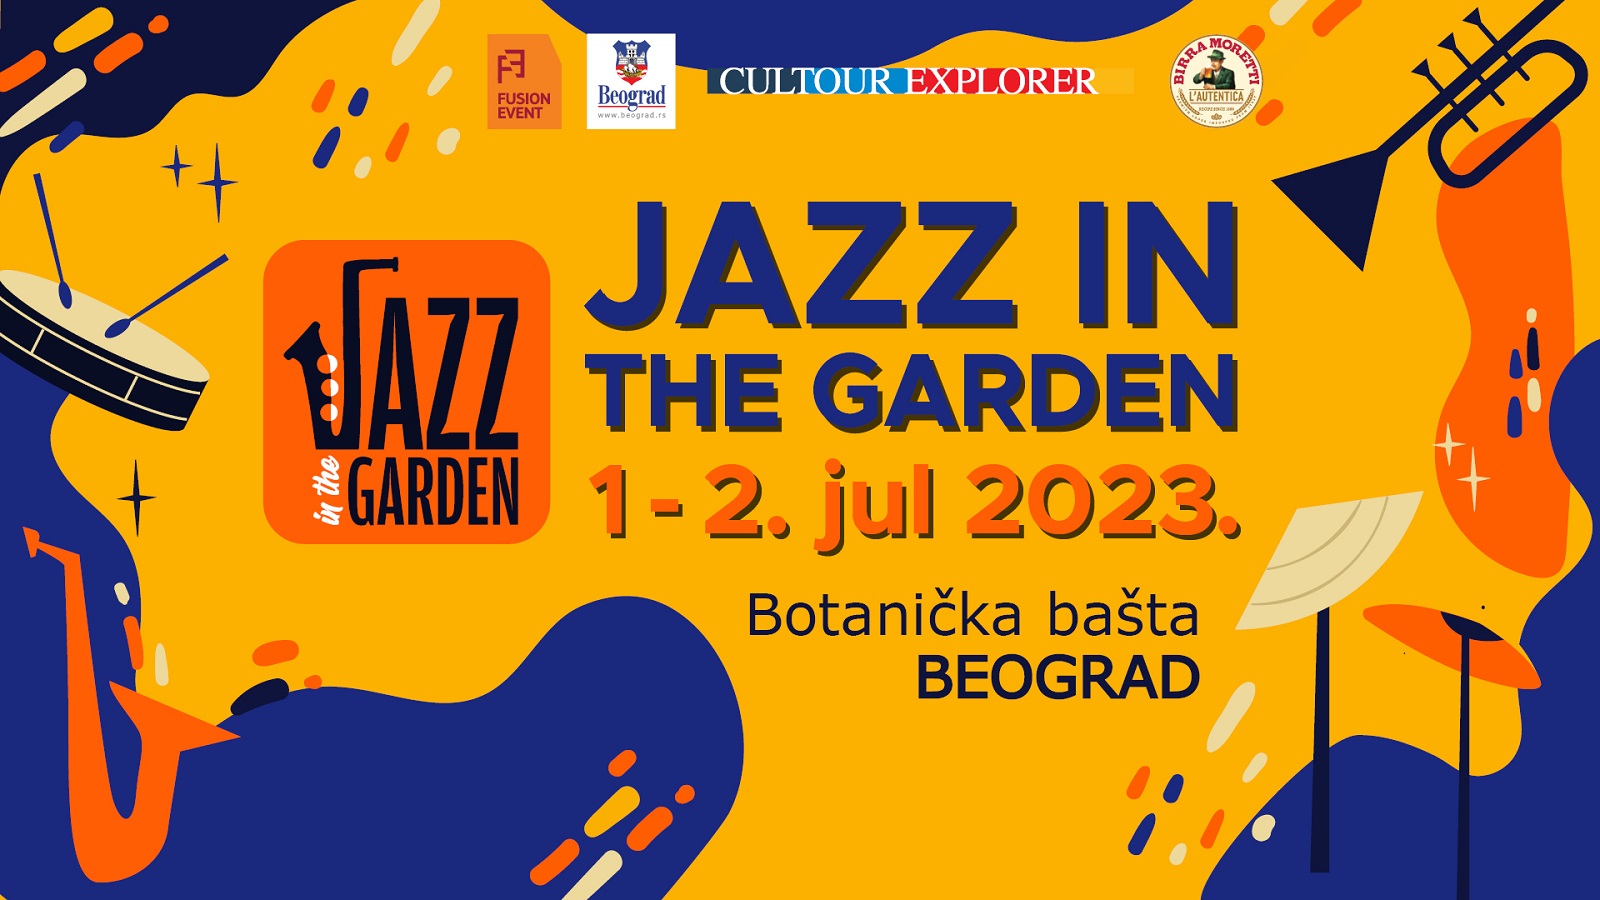 Jazz in the Garden - Koncerti više od 80 domaćih i svetskih džez muzičara u Botaničkoj bašti